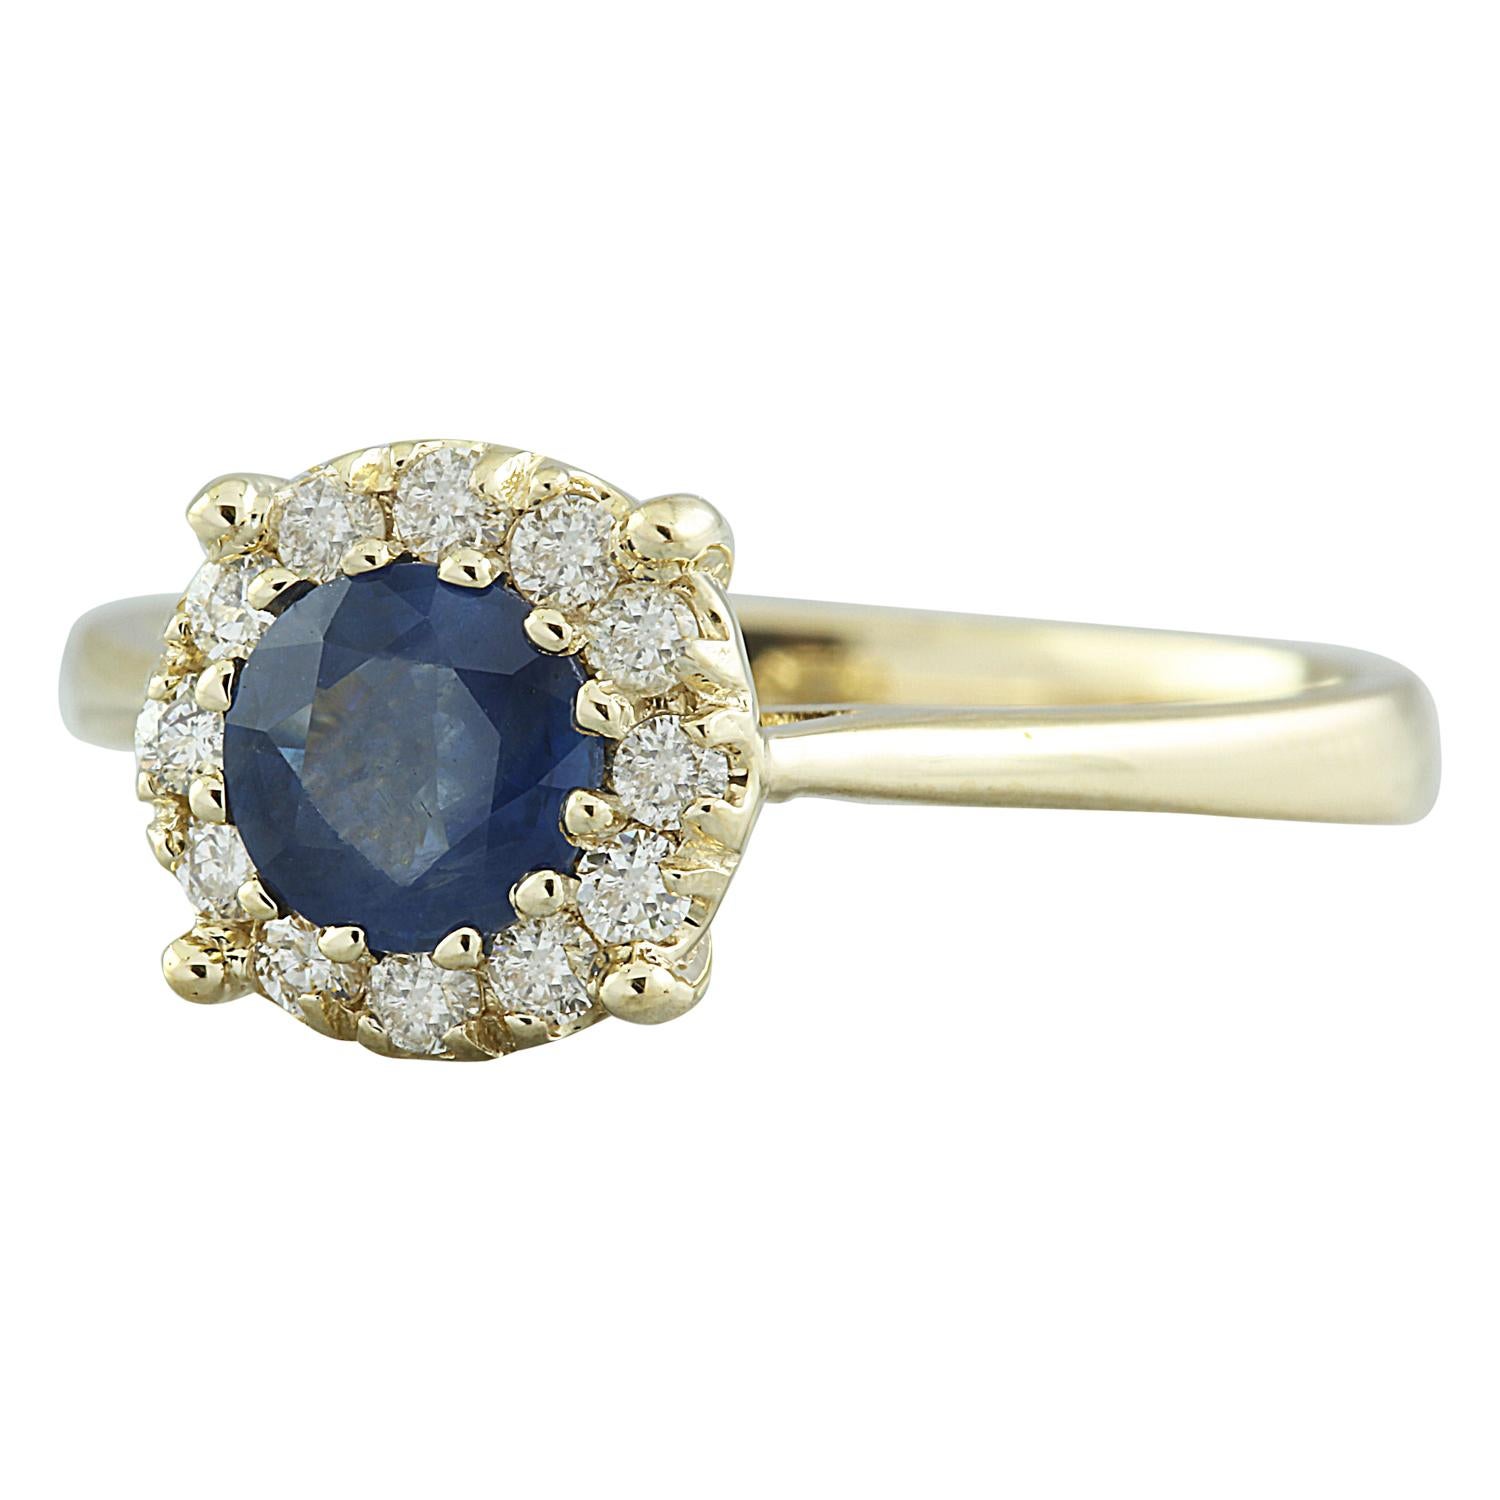 0.72 Carat Natural Sapphire 14 Karat Solid Yellow Gold Diamond Ring
Estampillé : 14K 
Poids total de l'anneau : 2,9 grammes 
Poids du saphir : 0,50 carat (5,50x5,50 millimètres)  
Poids du diamant : 0,22 carat (couleur F-G, pureté VS2-SI1)
Quantité